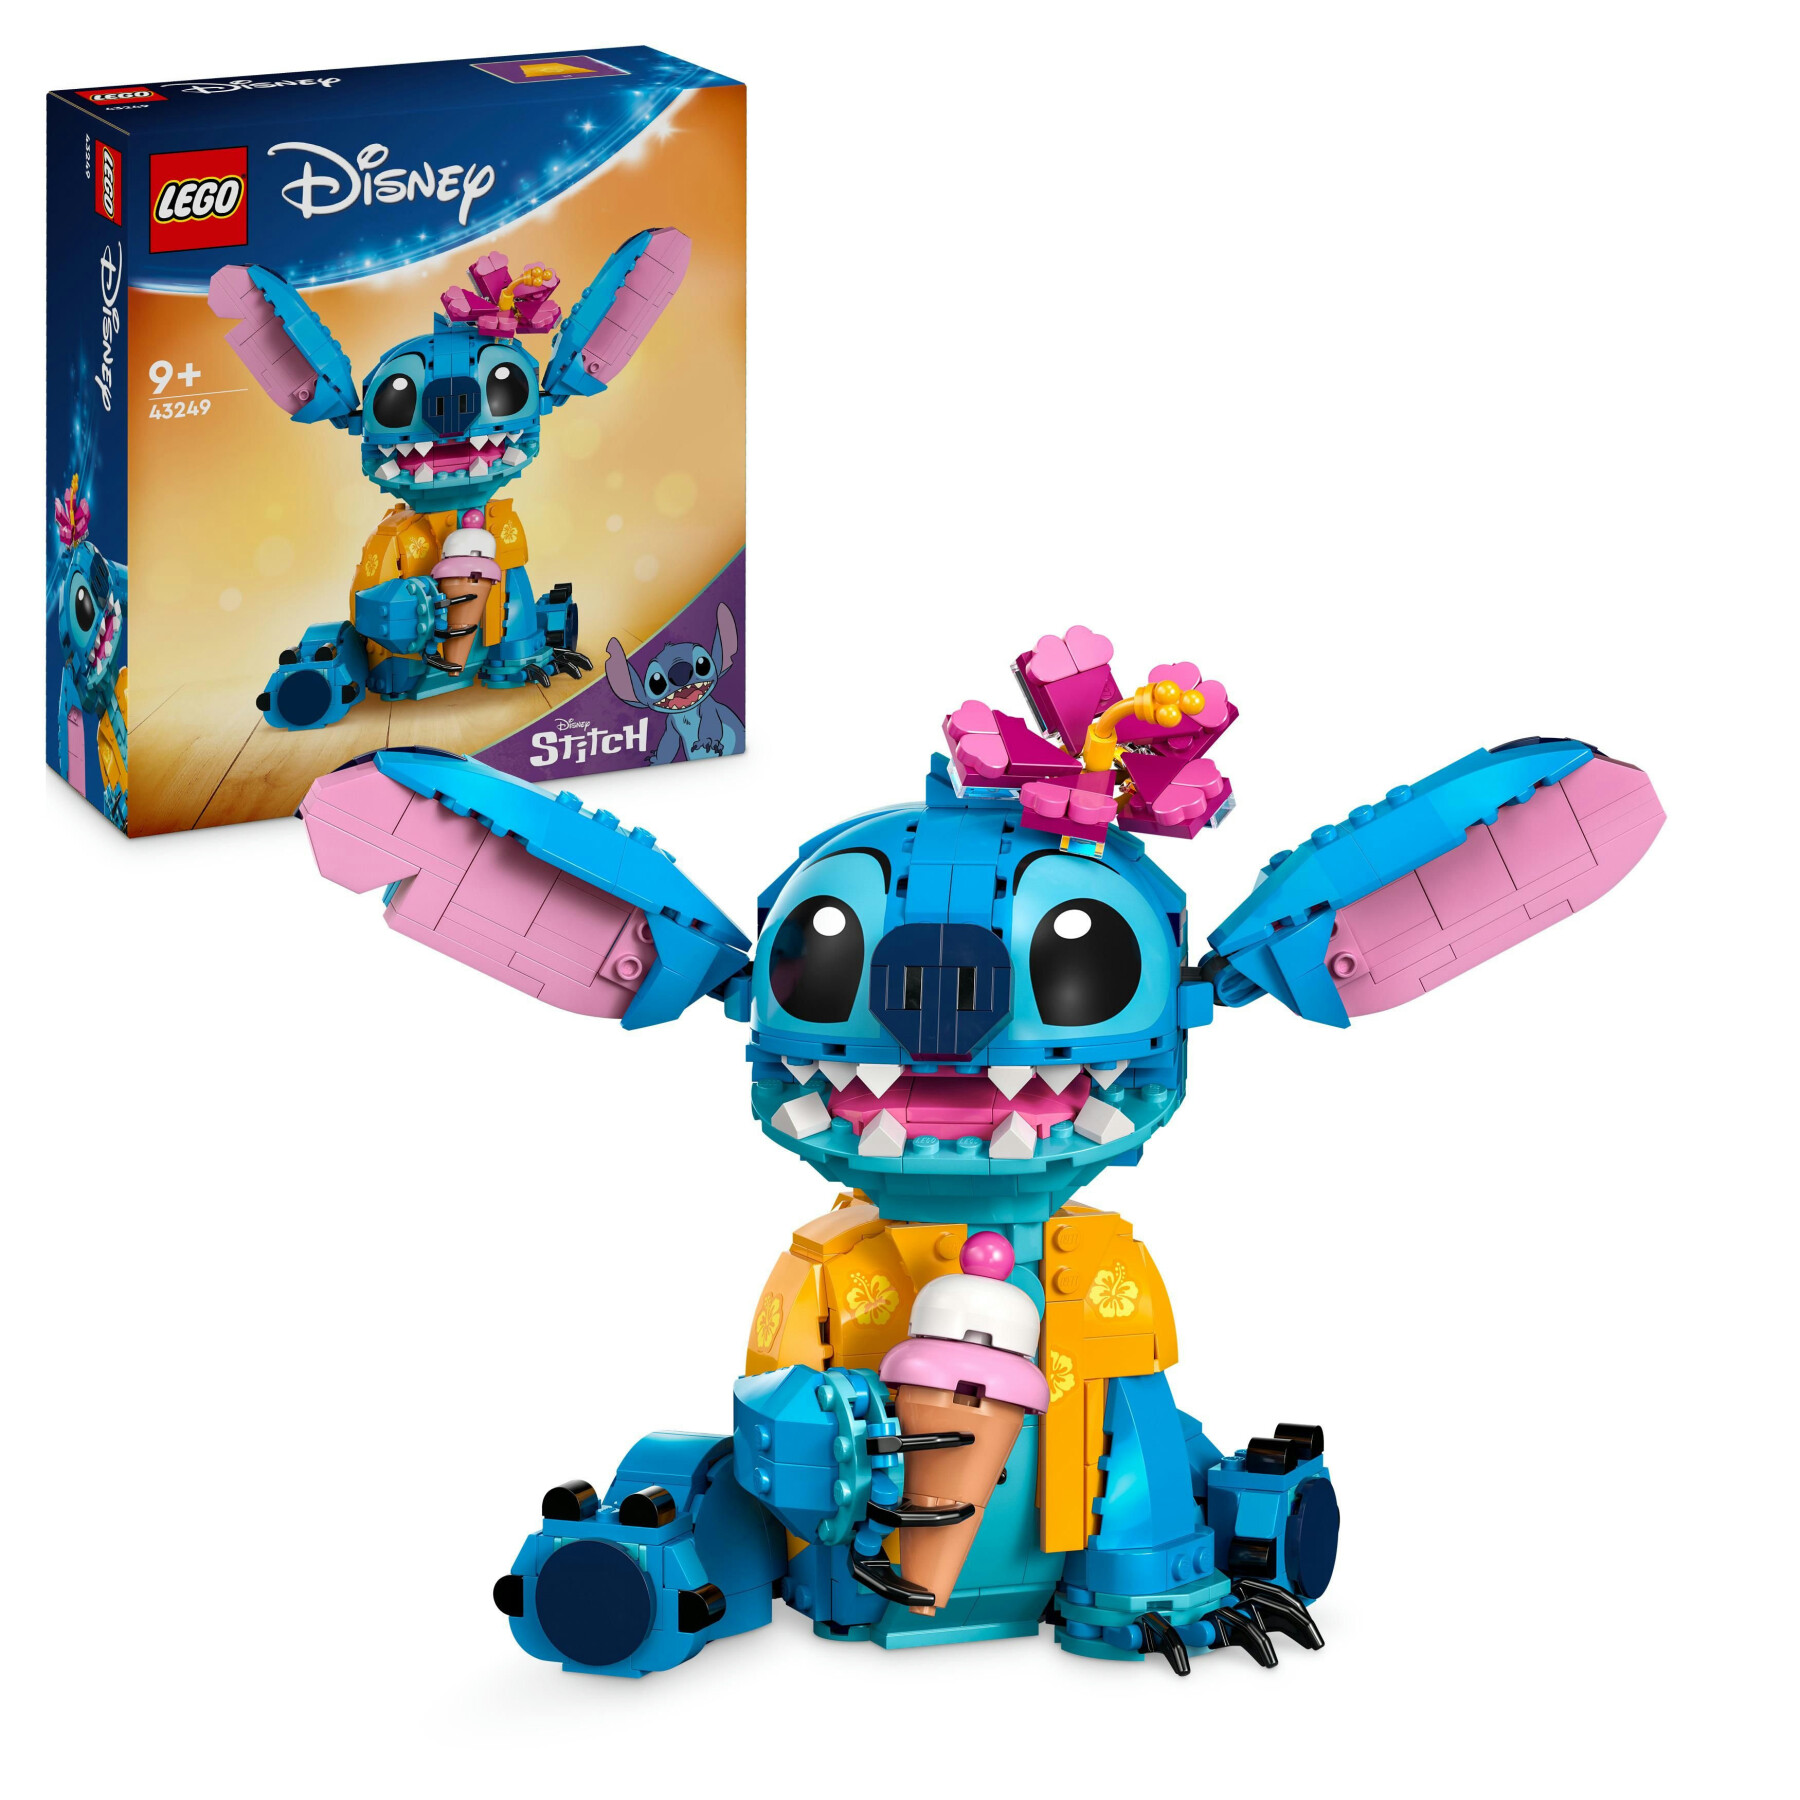 Lego disney 43249 stitch, gioco per bambini 9+, personaggio da costruire con parti mobili, idea regalo divertente dal film - Lego